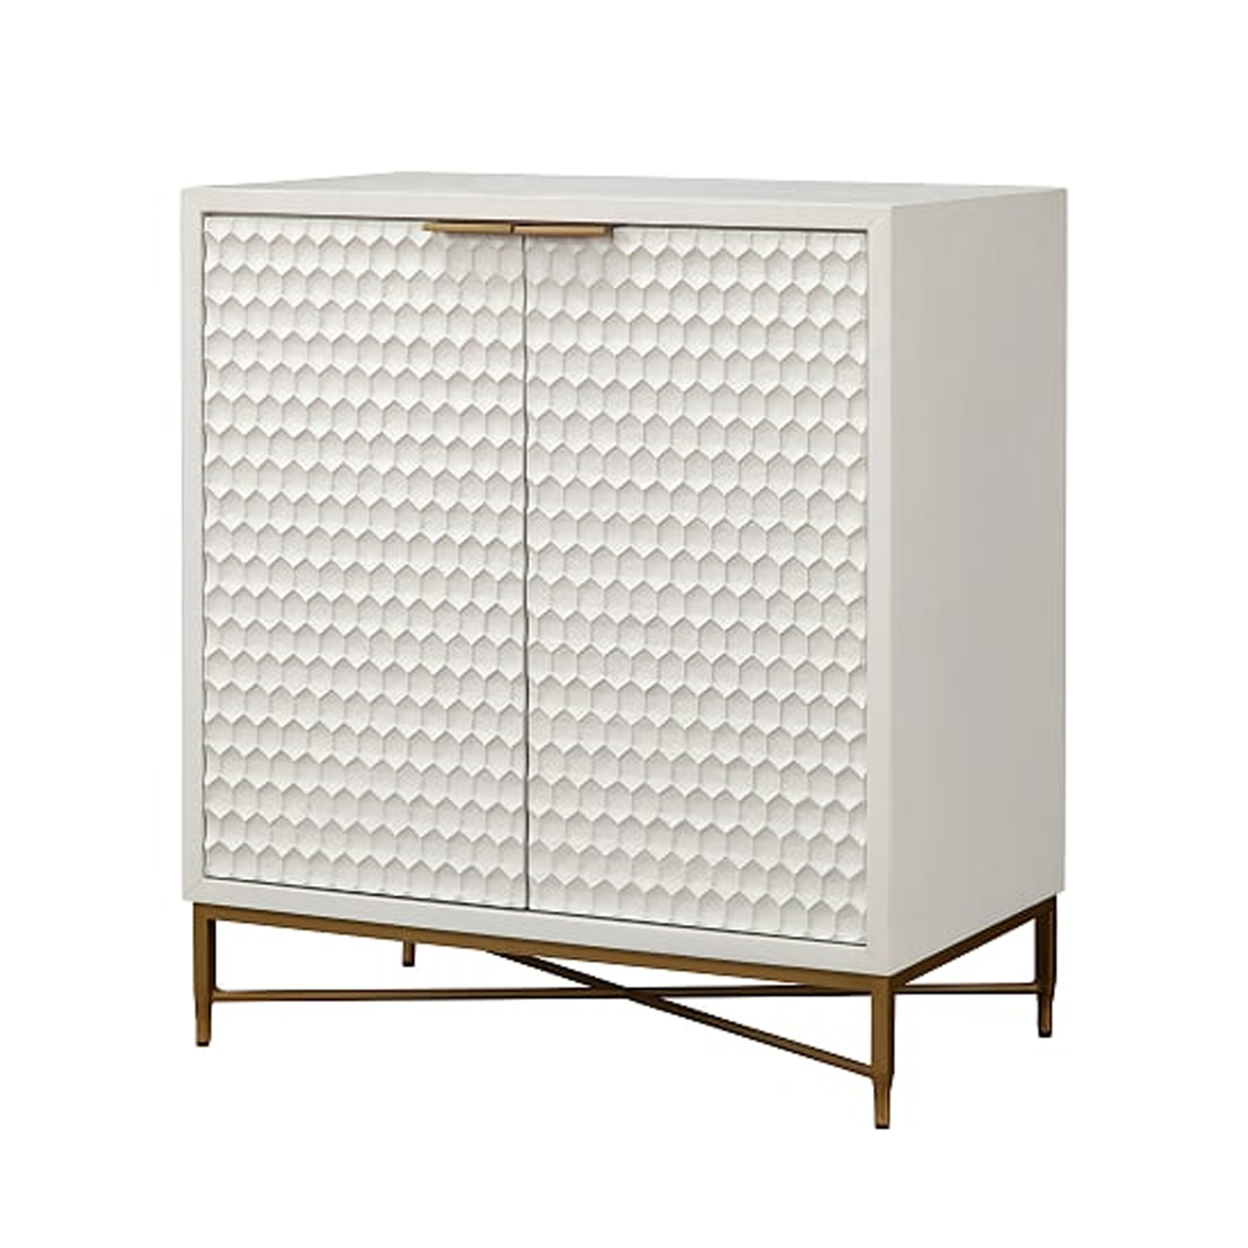 Honeycomb Design 2 Door Bar Cabinet With Metal Legs, White- Saltoro Sherpi